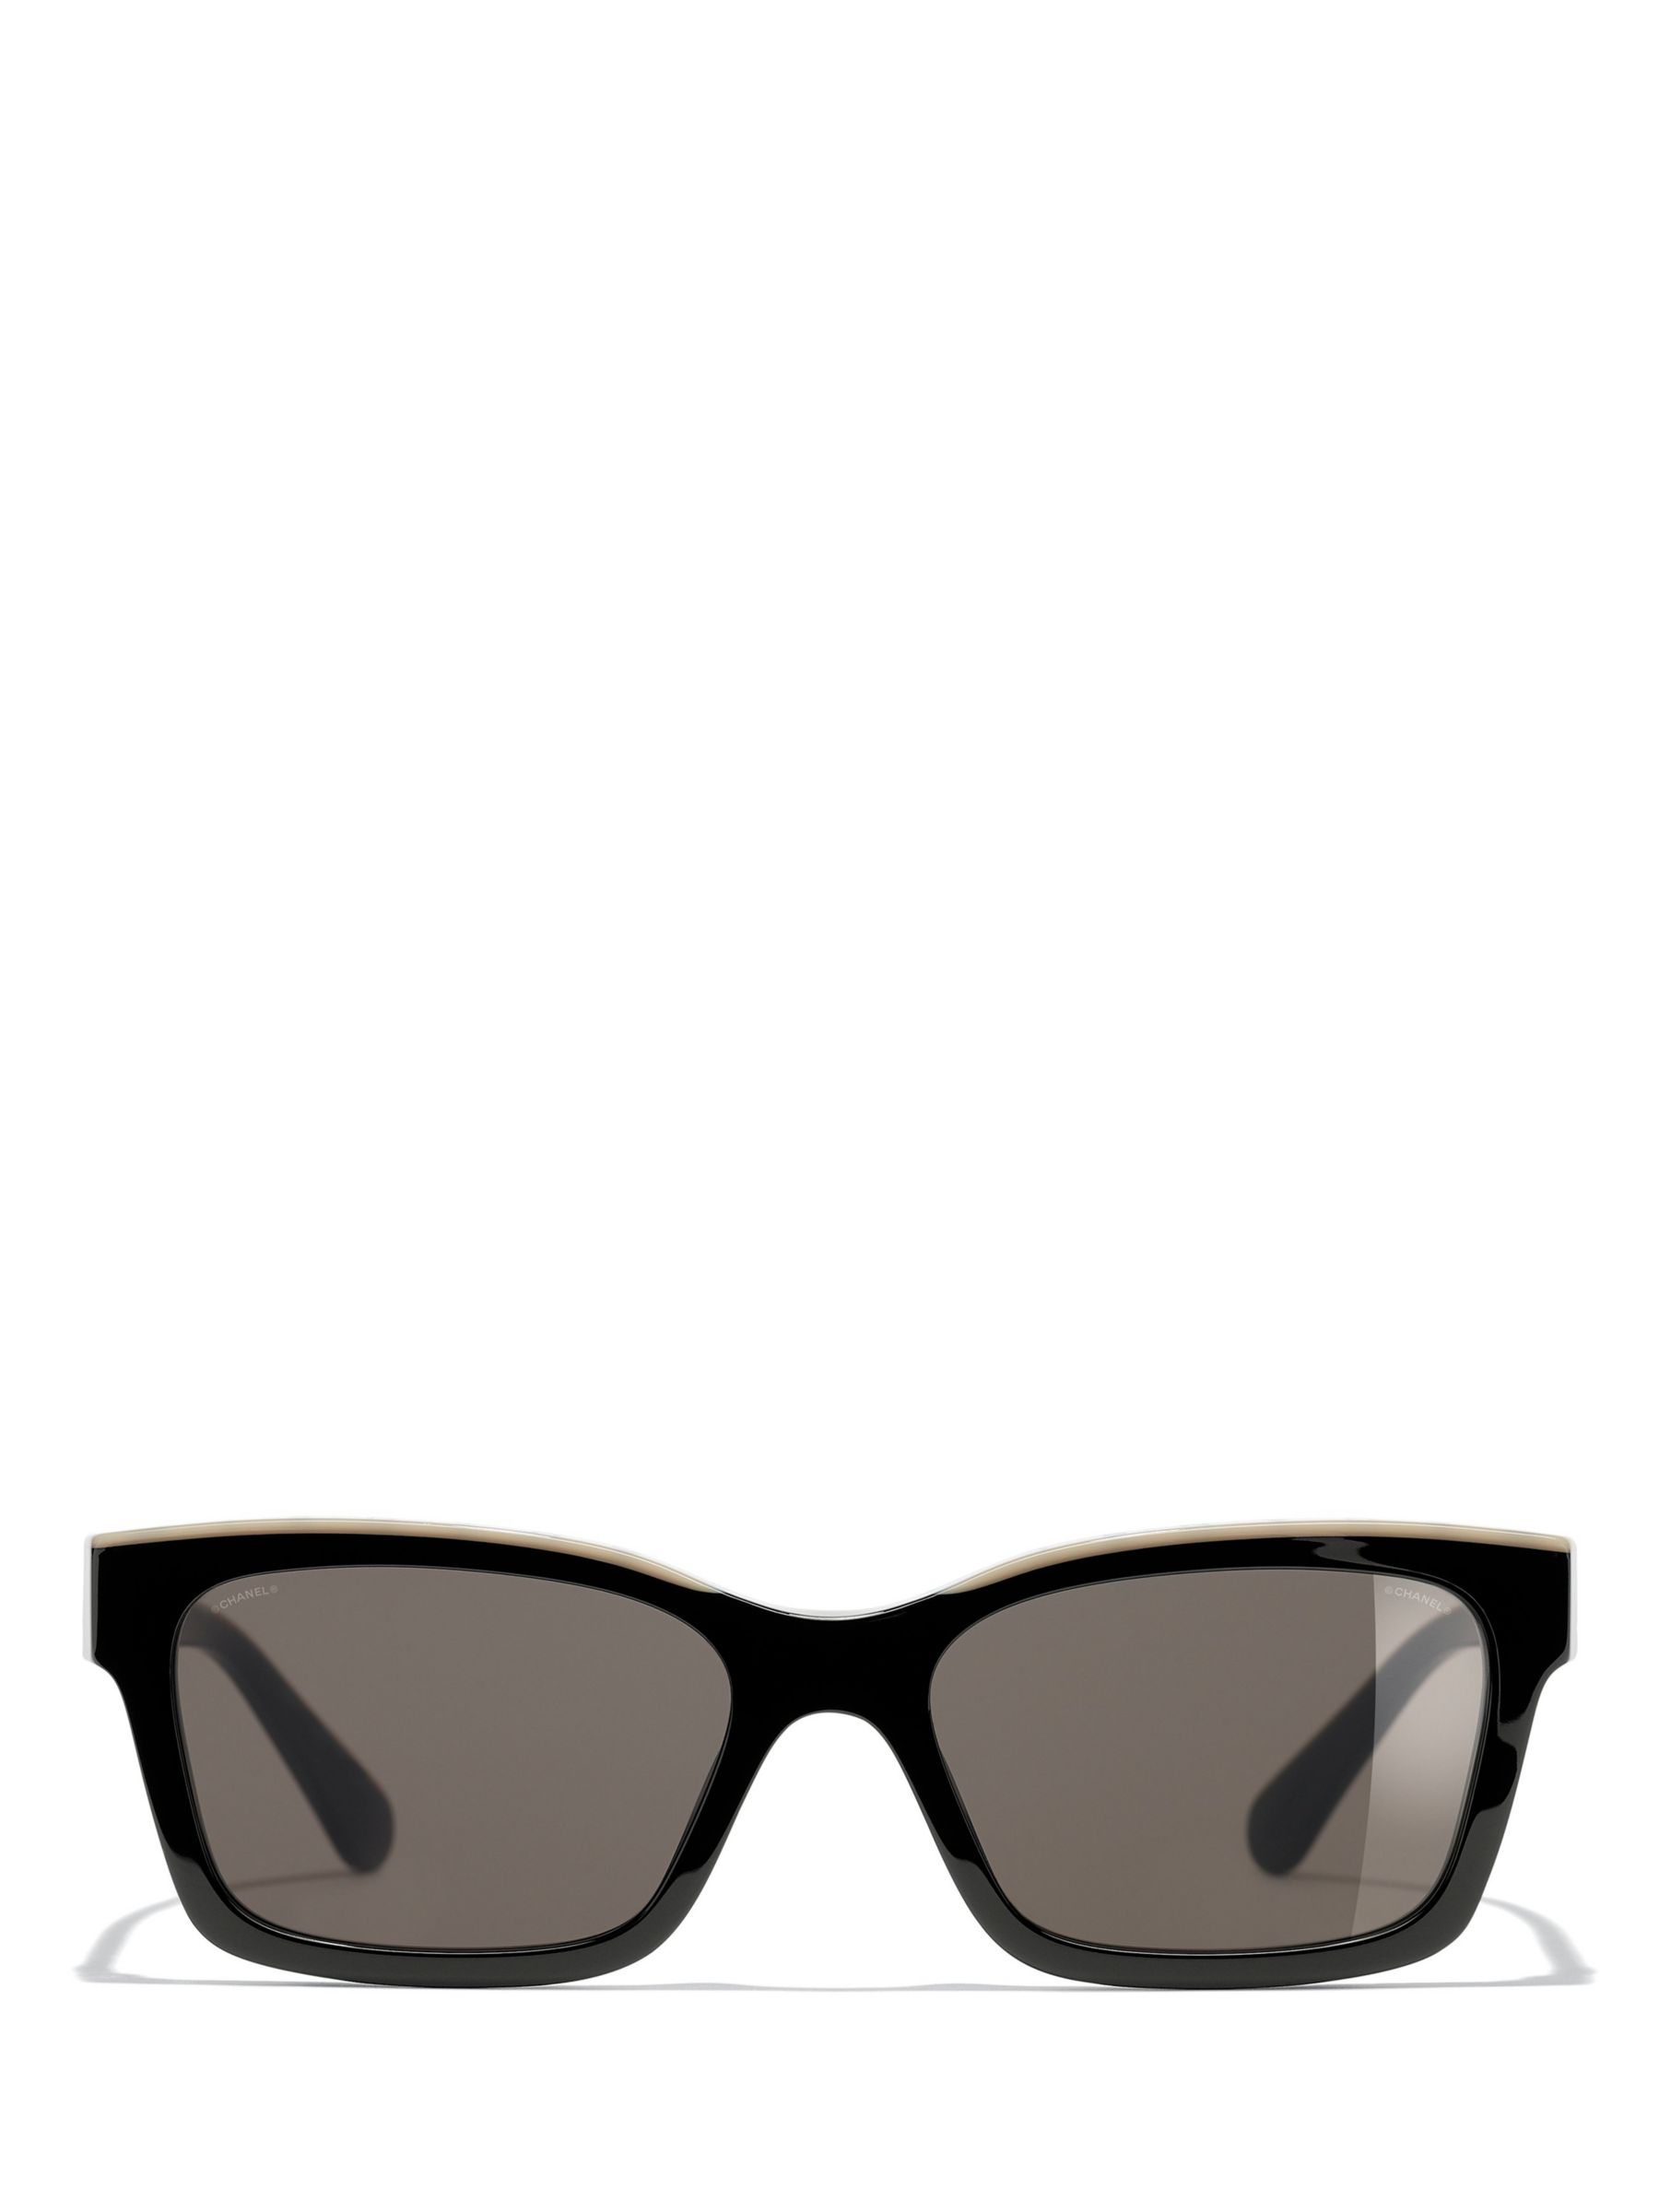 Chanel Square Sunglasses CH5417 Black/Beige